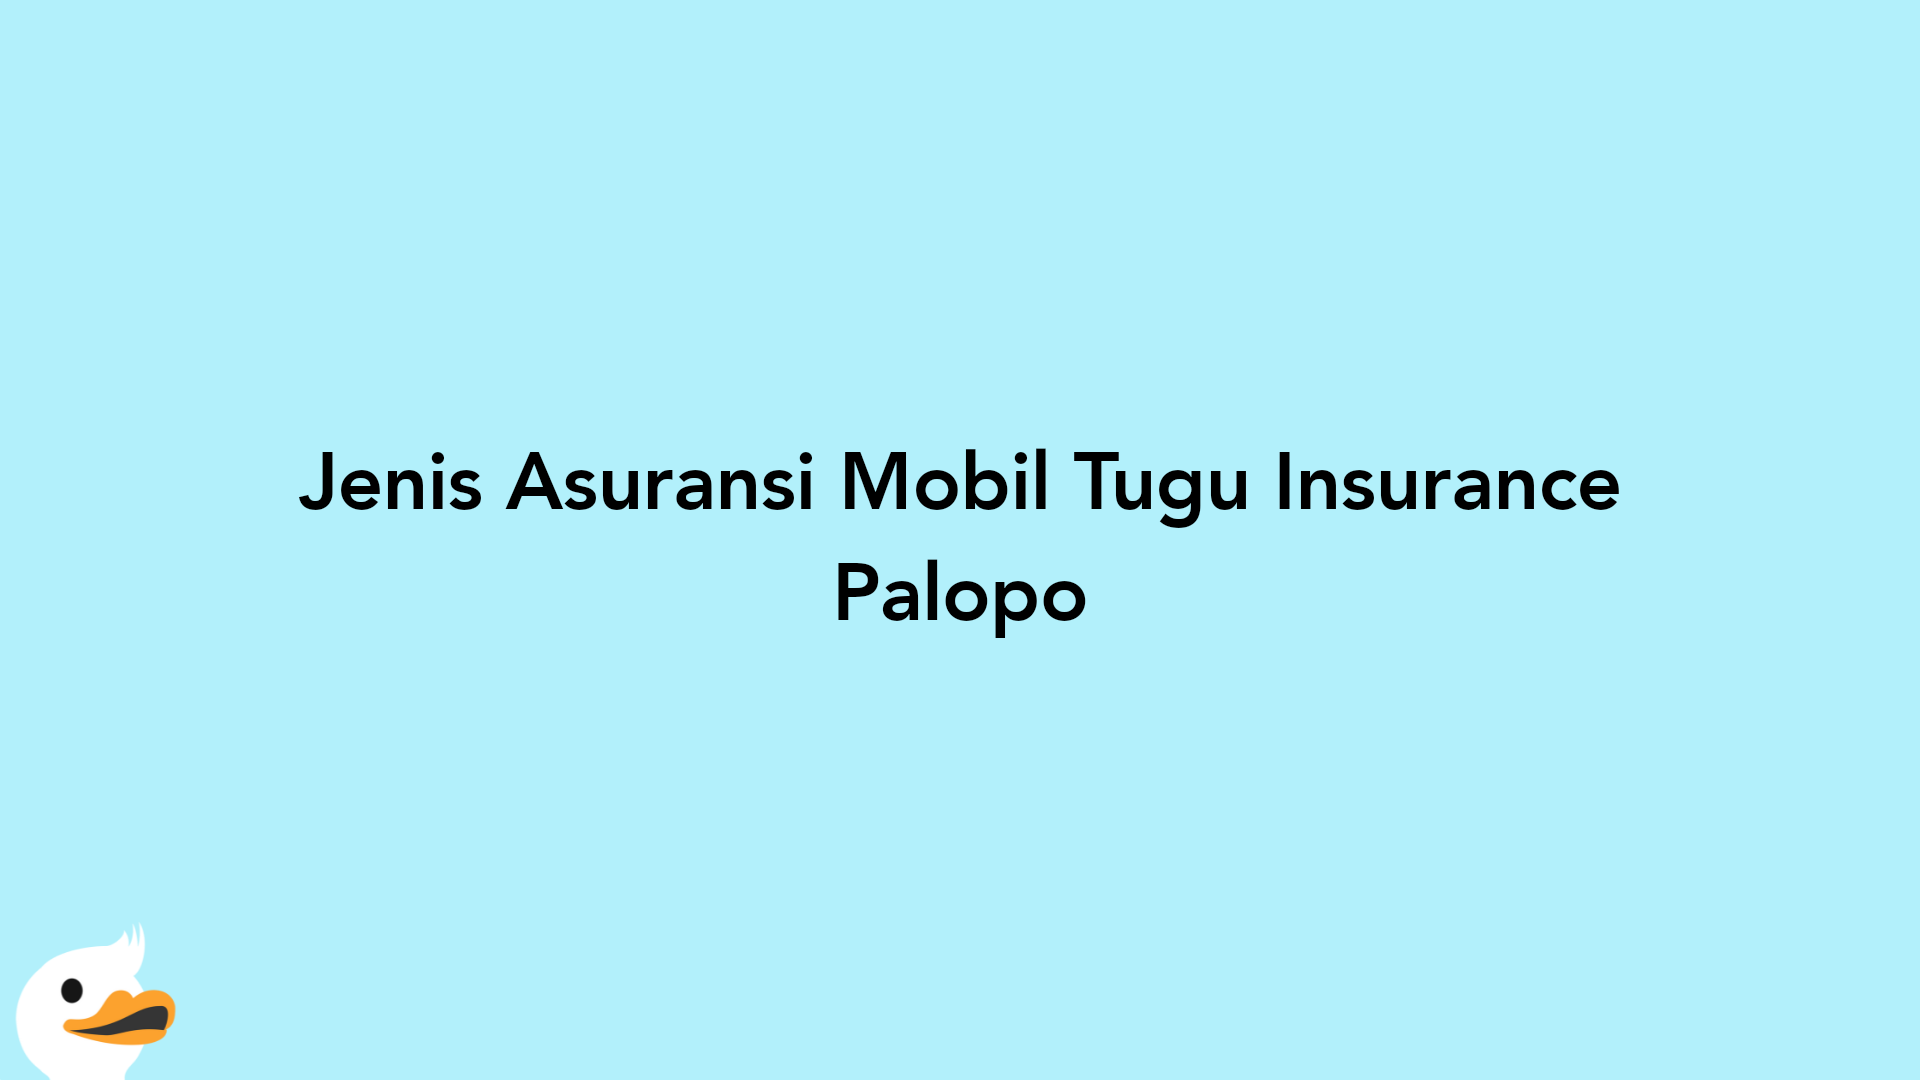 Jenis Asuransi Mobil Tugu Insurance Palopo